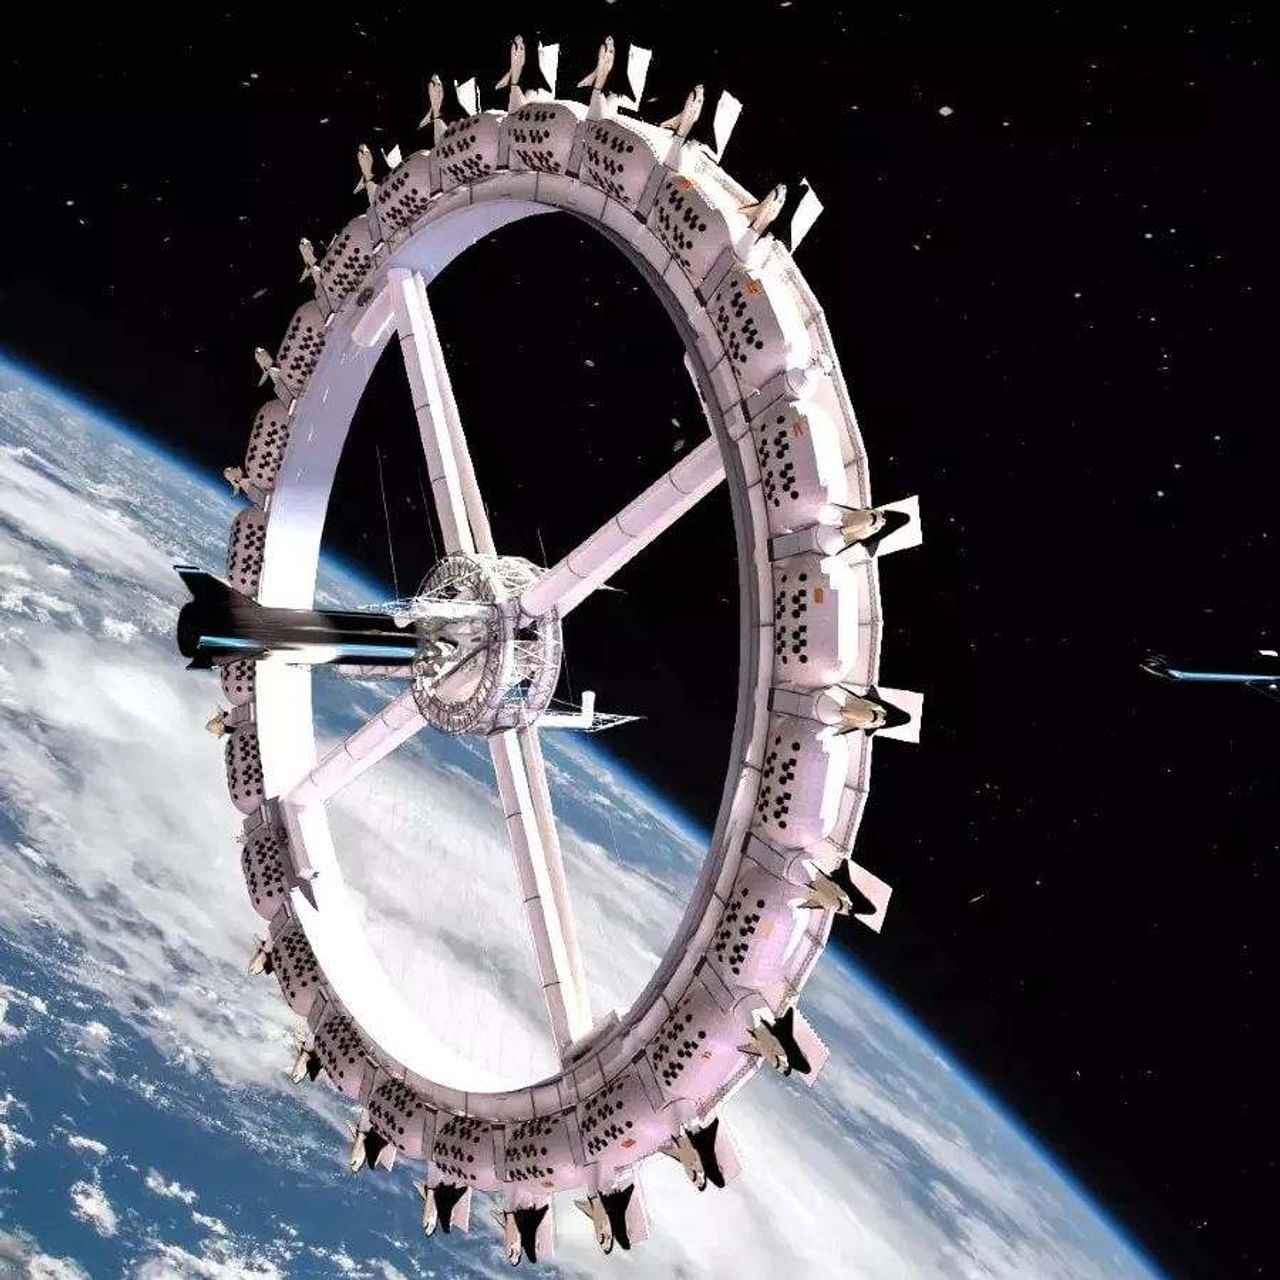 3 વર્ષ પછી સામાન્ય લોકો પણ અવકાશમાં સમય પસાર કરી શકશે. વિશ્વની પ્રથમ સ્પેસ હોટેલ (World first Space Hotel) અહીં બનાવવામાં આવશે. 2025માં લોકો તેમાં રહી શકશે અને અવકાશના સ્થળો જોઈ શકશે. આ હોટલનું નામ પાયોનિયર સ્ટેશન (Pioneer station) હશે. તેને અમેરિકન સ્પેસ કન્સ્ટ્રક્શન કંપની ઓર્બિટલ એસેમ્બલી કોર્પોરેશન (Orbital Assembly Corporation) દ્વારા તૈયાર કરવામાં આવશે. આ હોટલ એક ફરતા વ્હીલના રૂપમાં હશે. જે પૃથ્વીની આસપાસ ફરતી જોવા મળશે. તે ખૂબ જ લક્ઝરી હોટેલ હશે. જાણો, અહીં કઈ કઈ સુવિધાઓ મળશે.